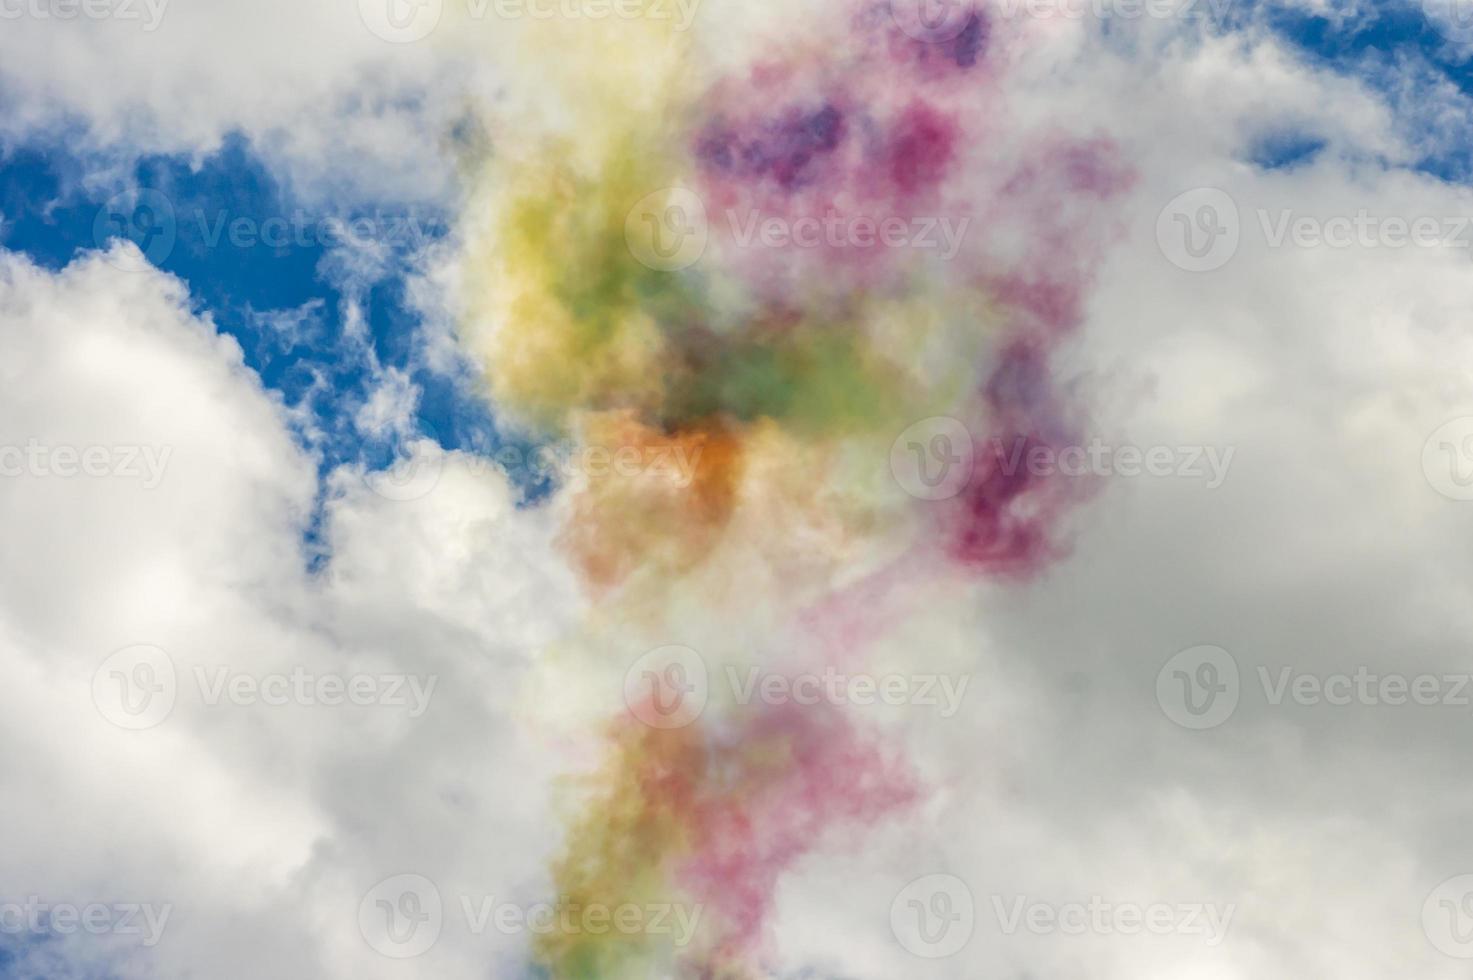 färgglad rök i blå himmel med moln foto